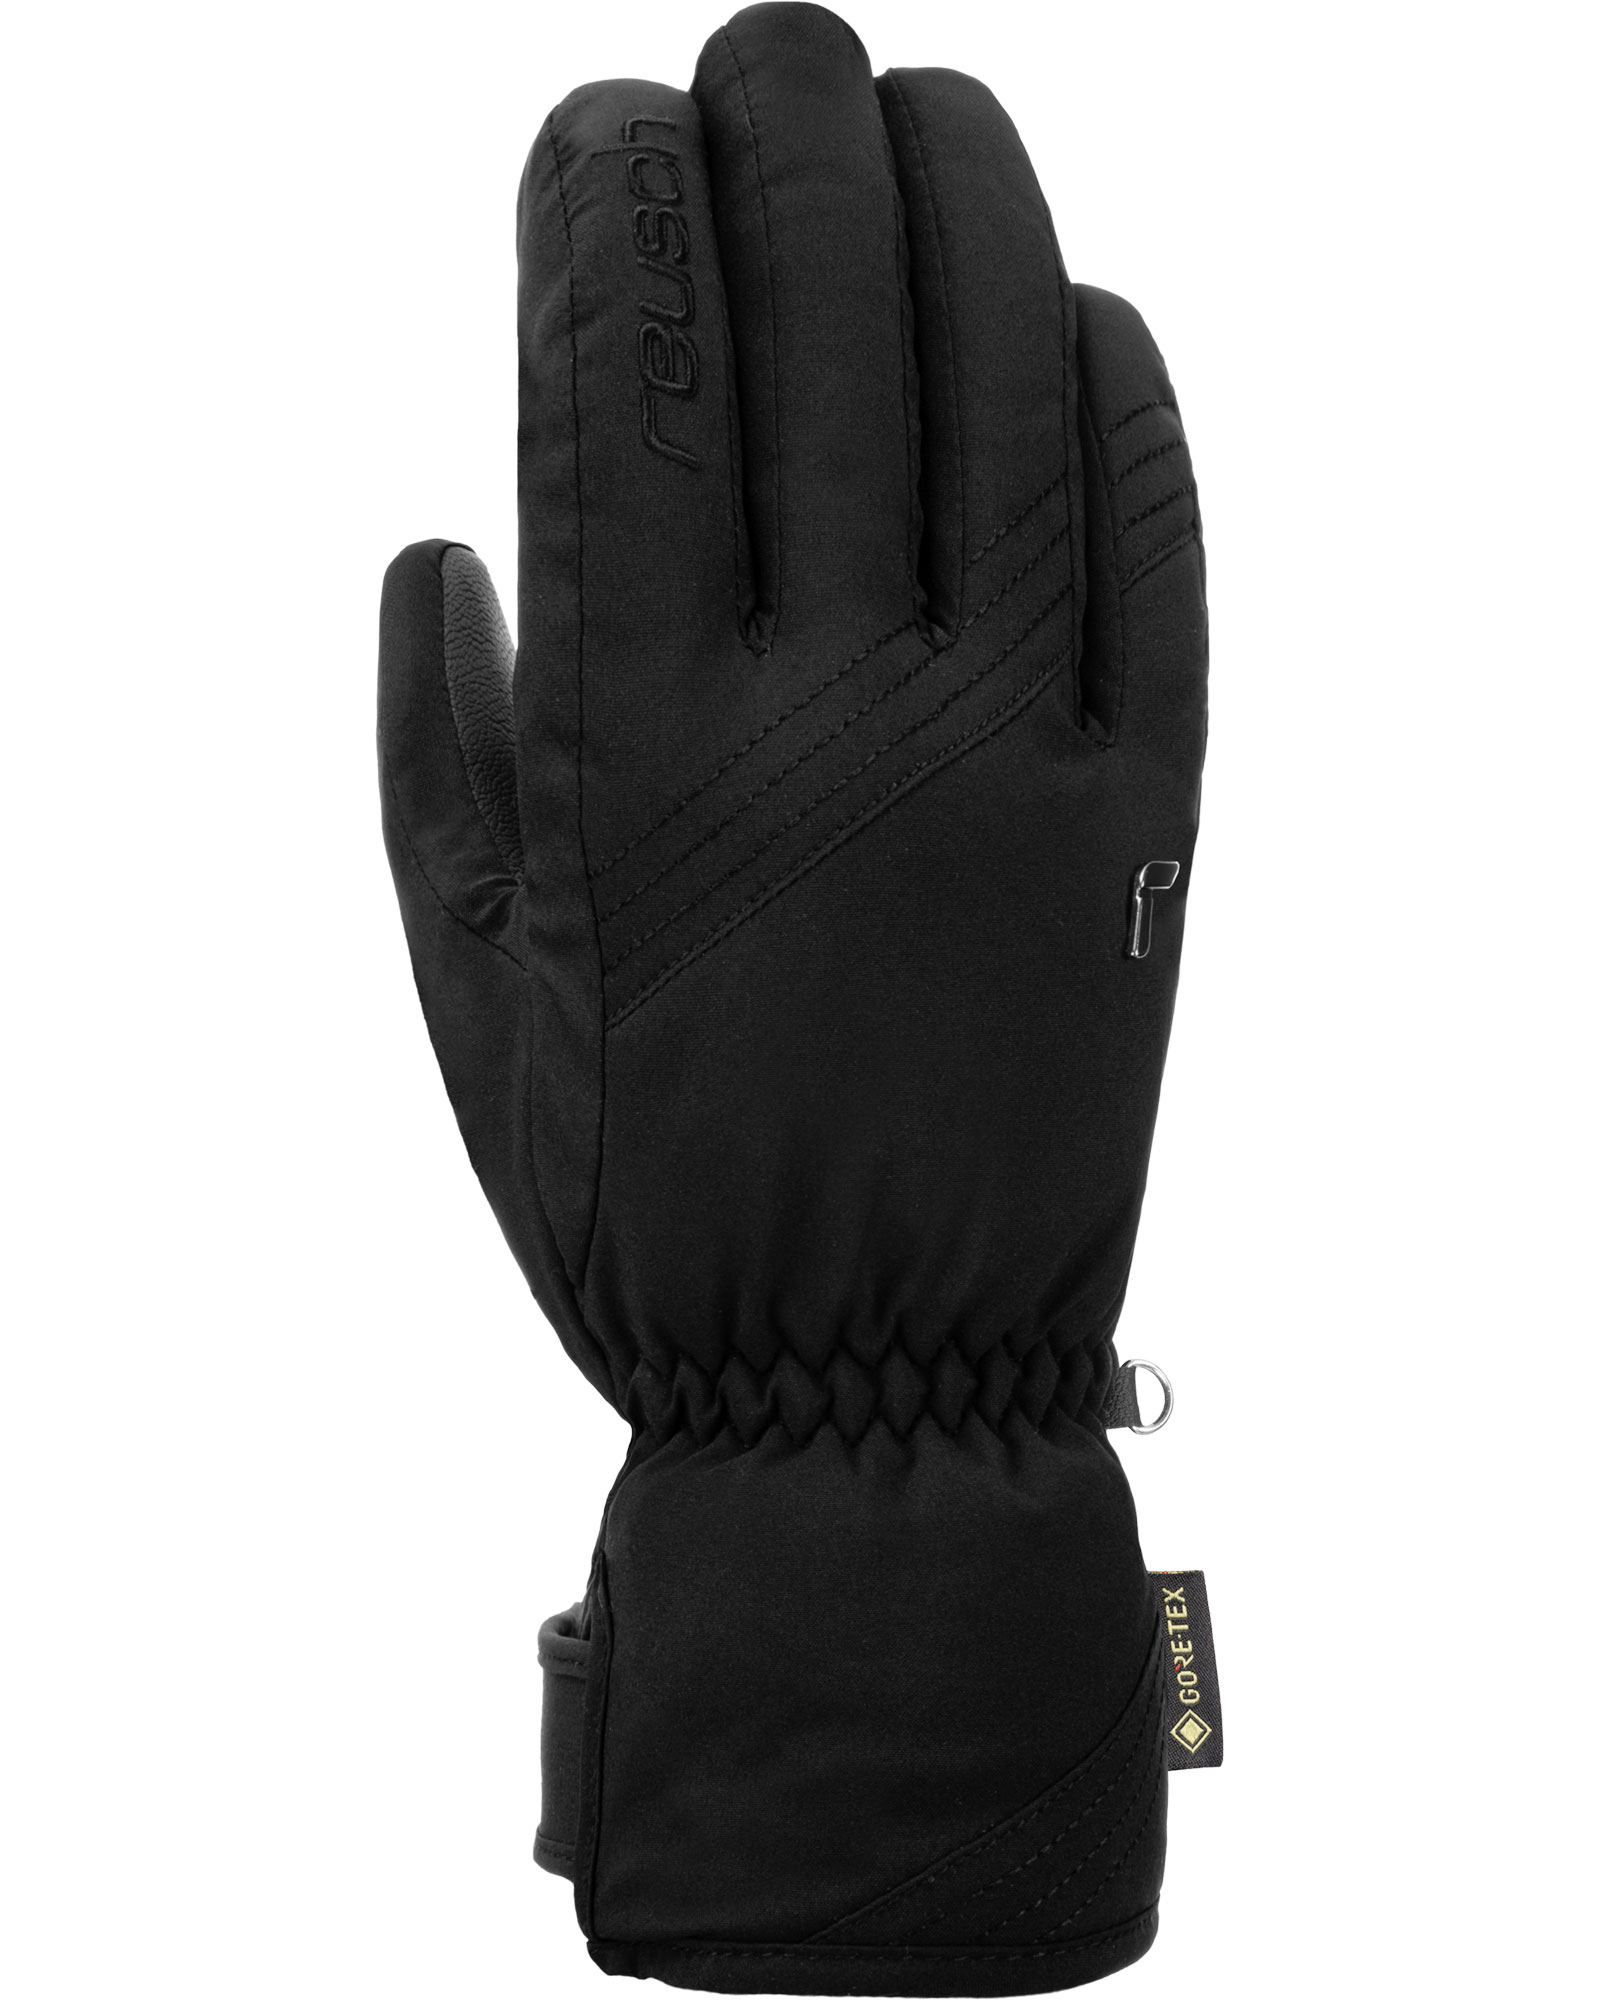 Reusch Susan GORE TEX Women’s Gloves - Black/white Size 7